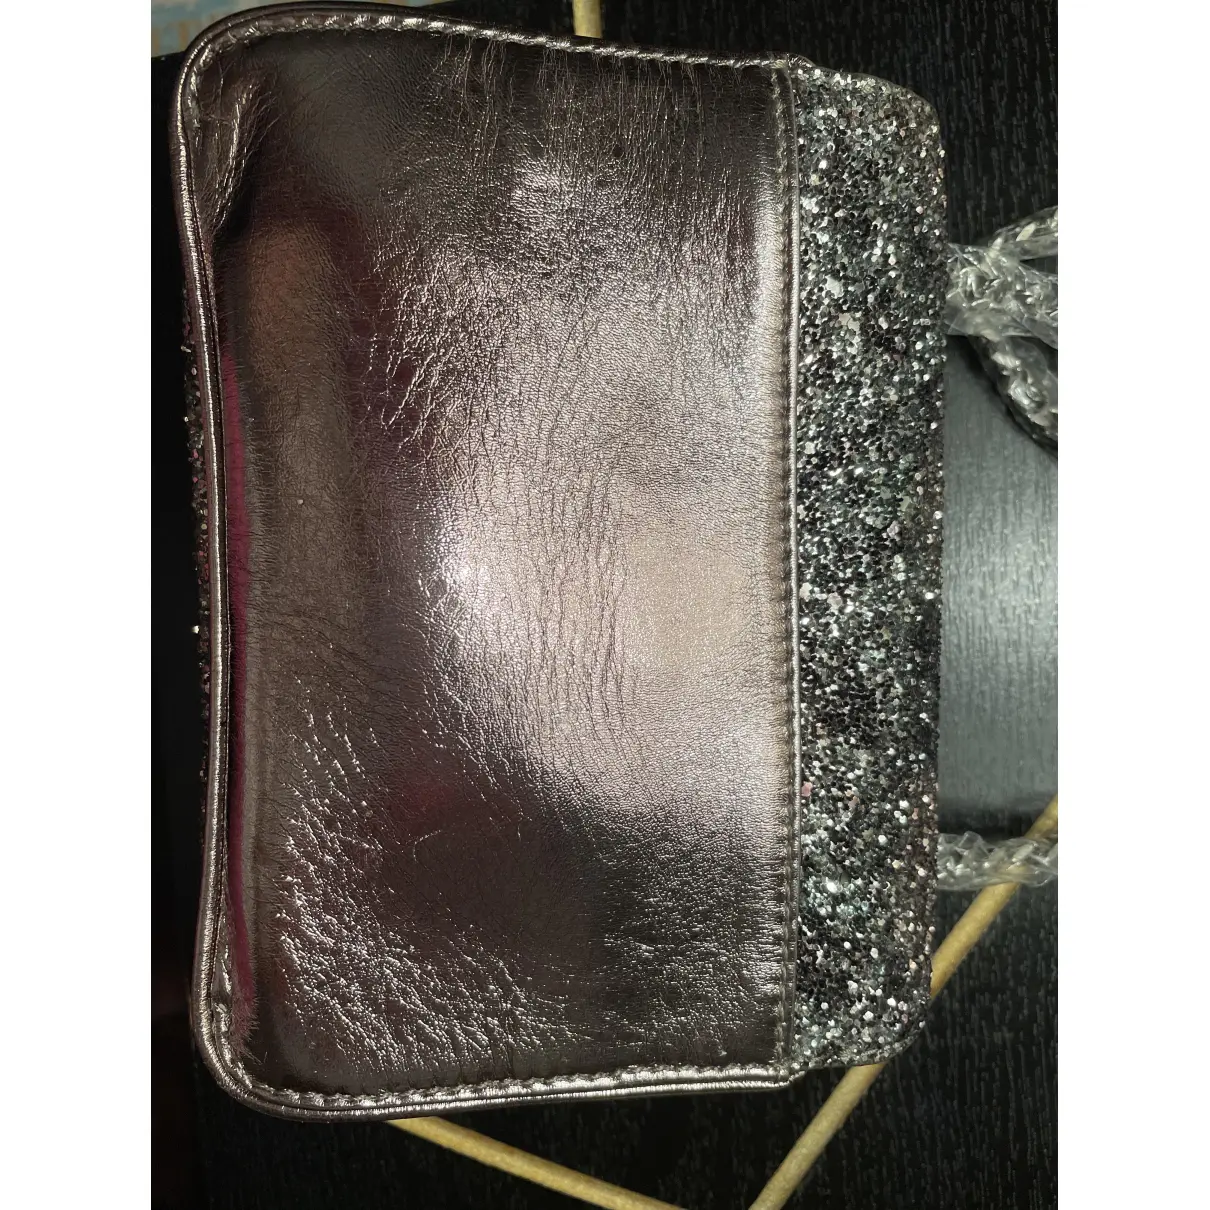 Buy Zadig & Voltaire Glitter handbag online